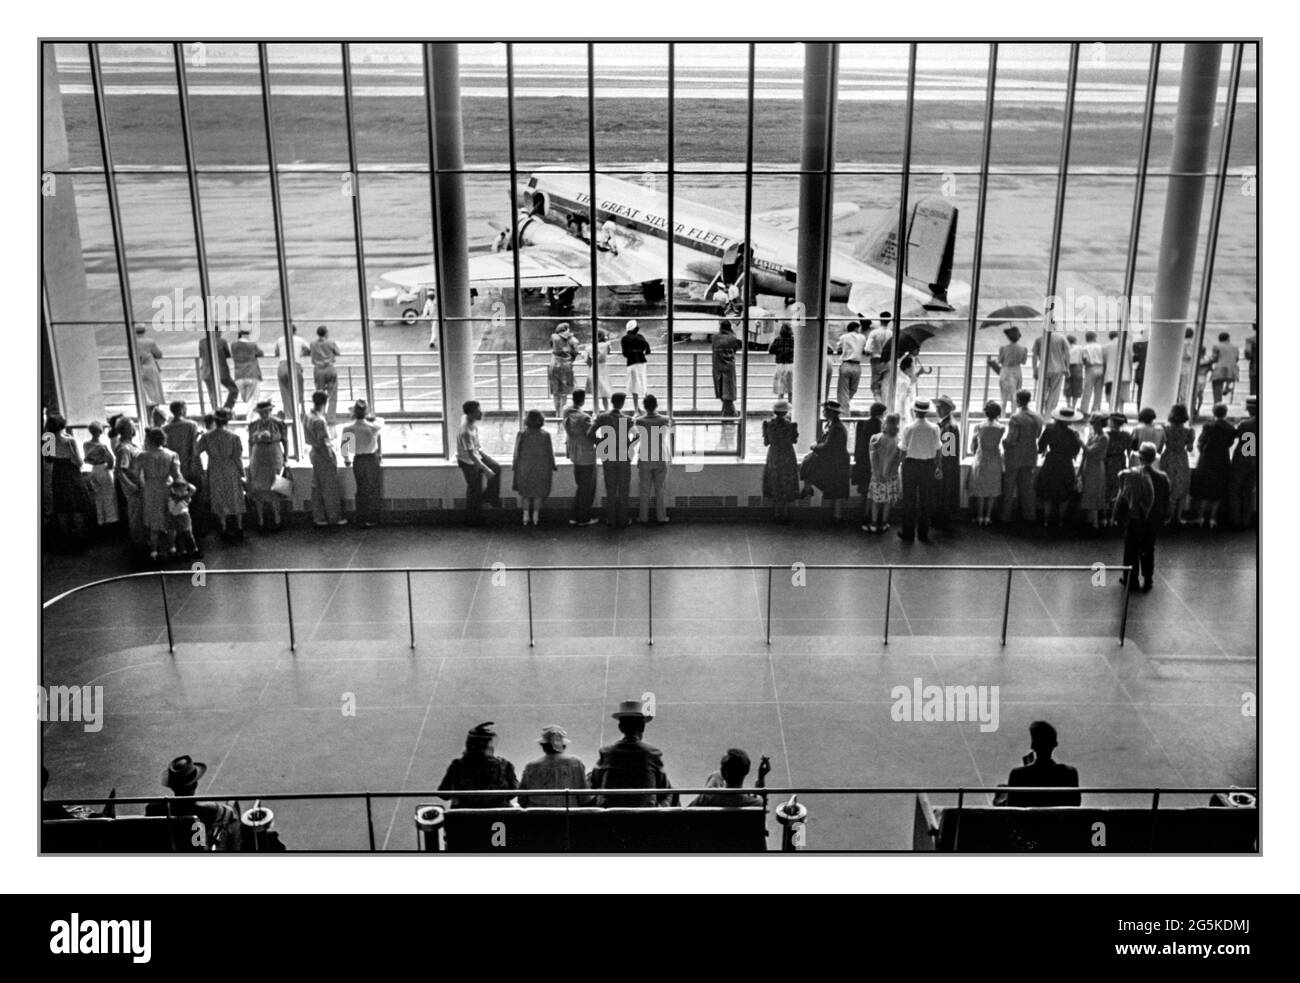 Vintage les visiteurs du terminal de l'aéroport des années 1940 regardent l'activité d'embarquement des avions DC3. Vue depuis la plate-forme de visualisation à l'aéroport municipal de Washington, D.C.] Jack Delano photographe [1941 juillet] États-Unis--District de Columbia--Washington (D.C.) L'âge d'or du vol. DC3 Silver Fleet Eastern Airlines - avion à hélice à l'extérieur du terminal, embarquement des passagers. Banque D'Images